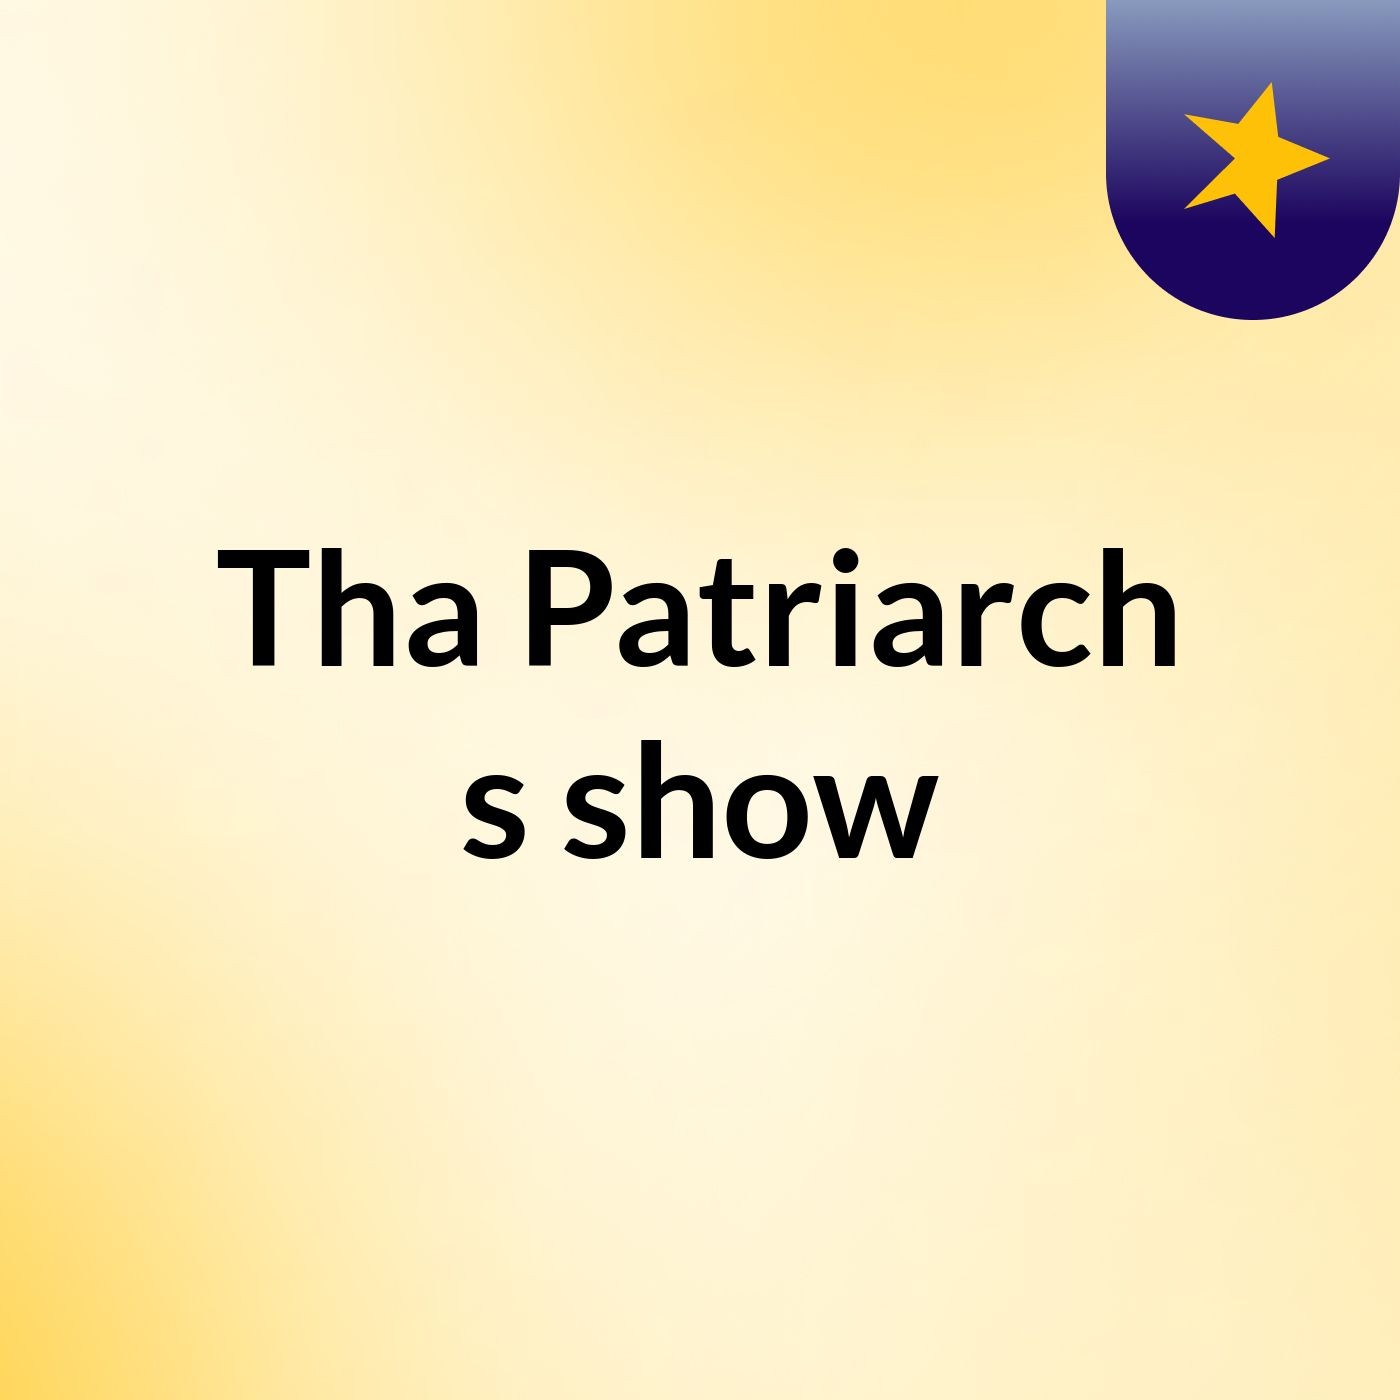 Tha Patriarch's show